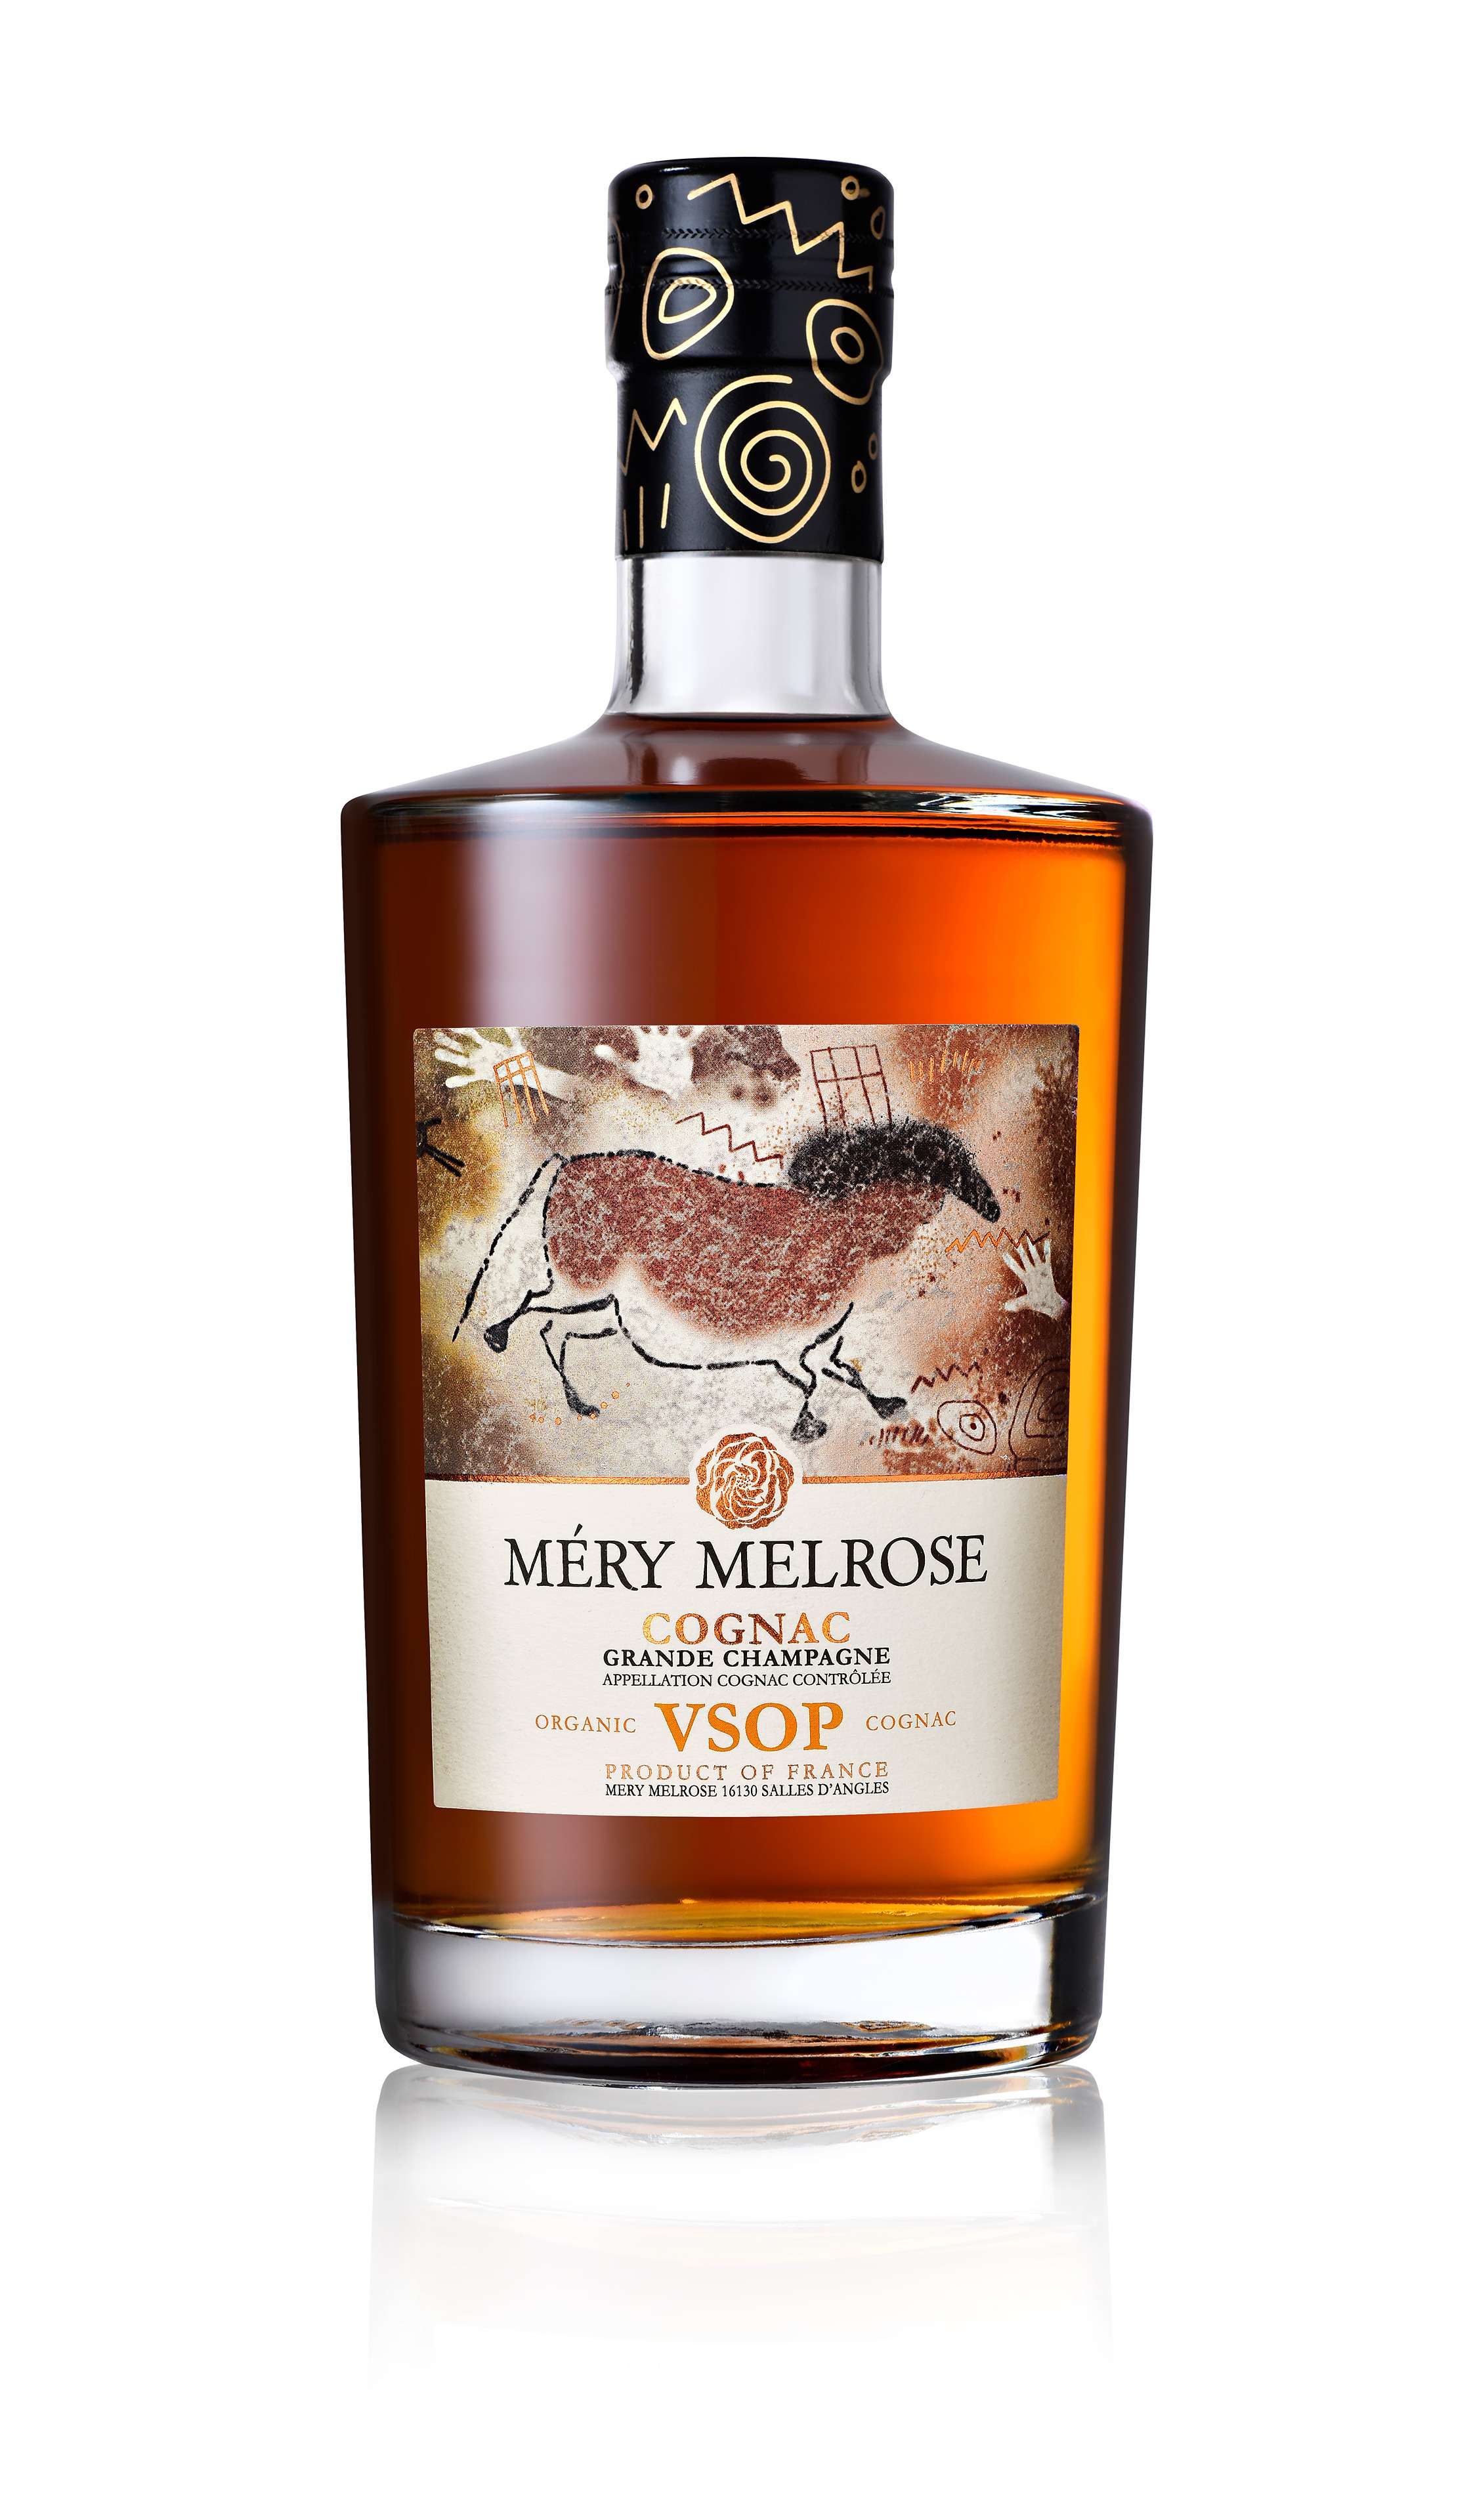 Mery Melrose Cognac VSOP Other Spirits